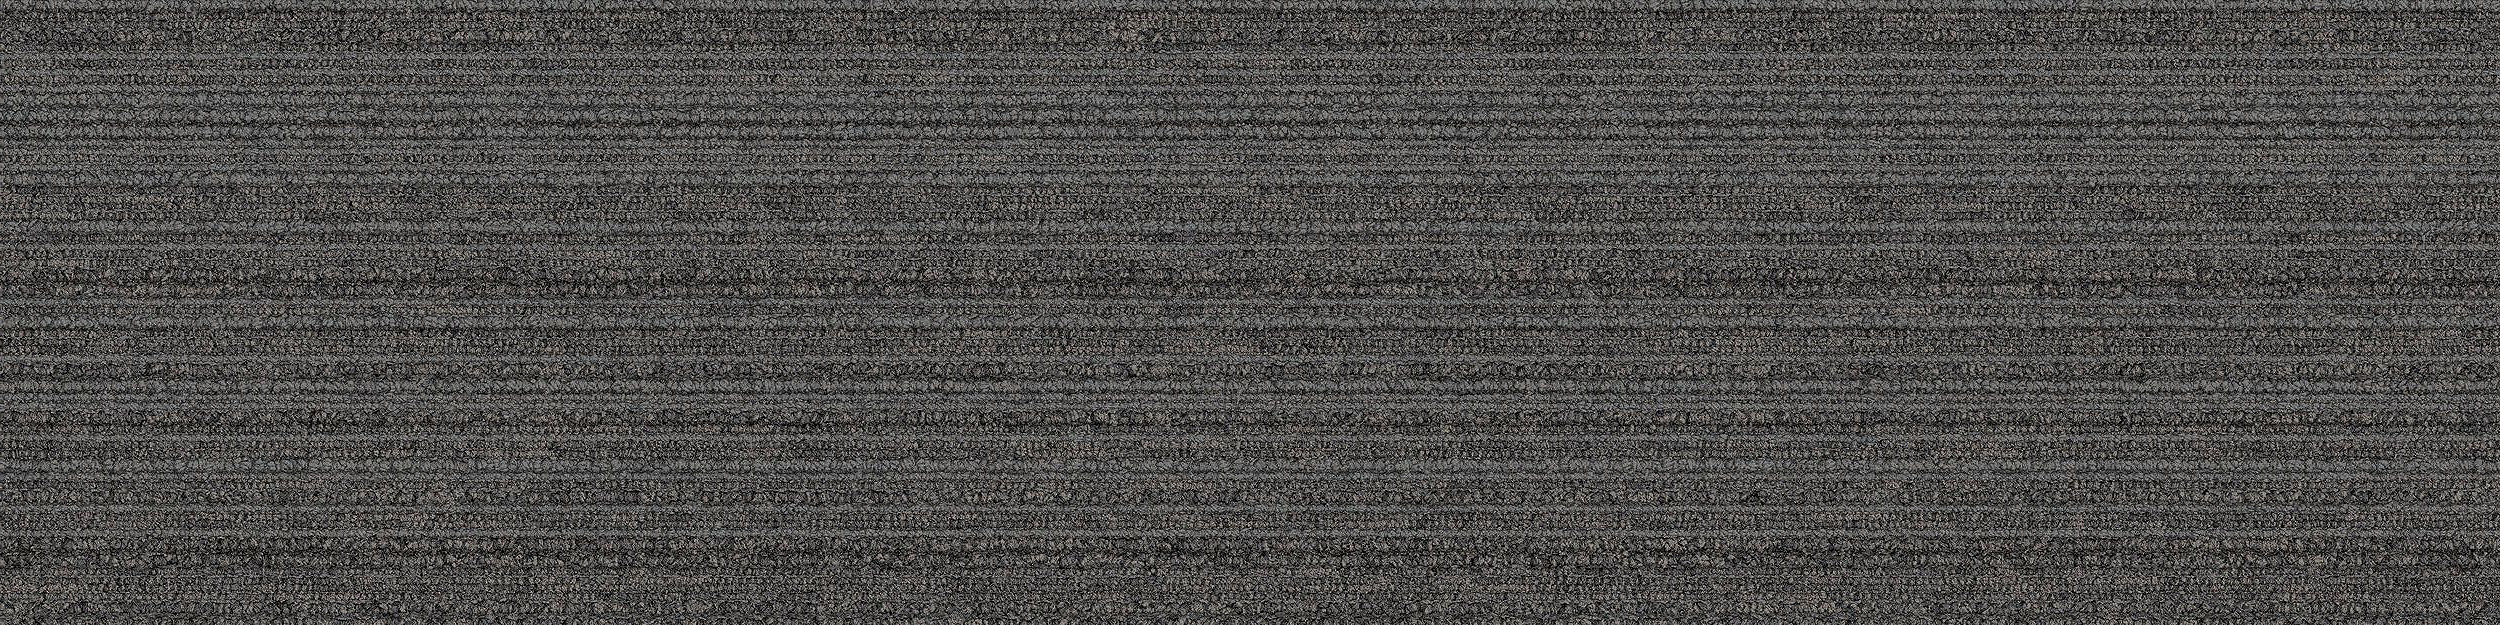 SL910 Carpet Tile In Graphite image number 7